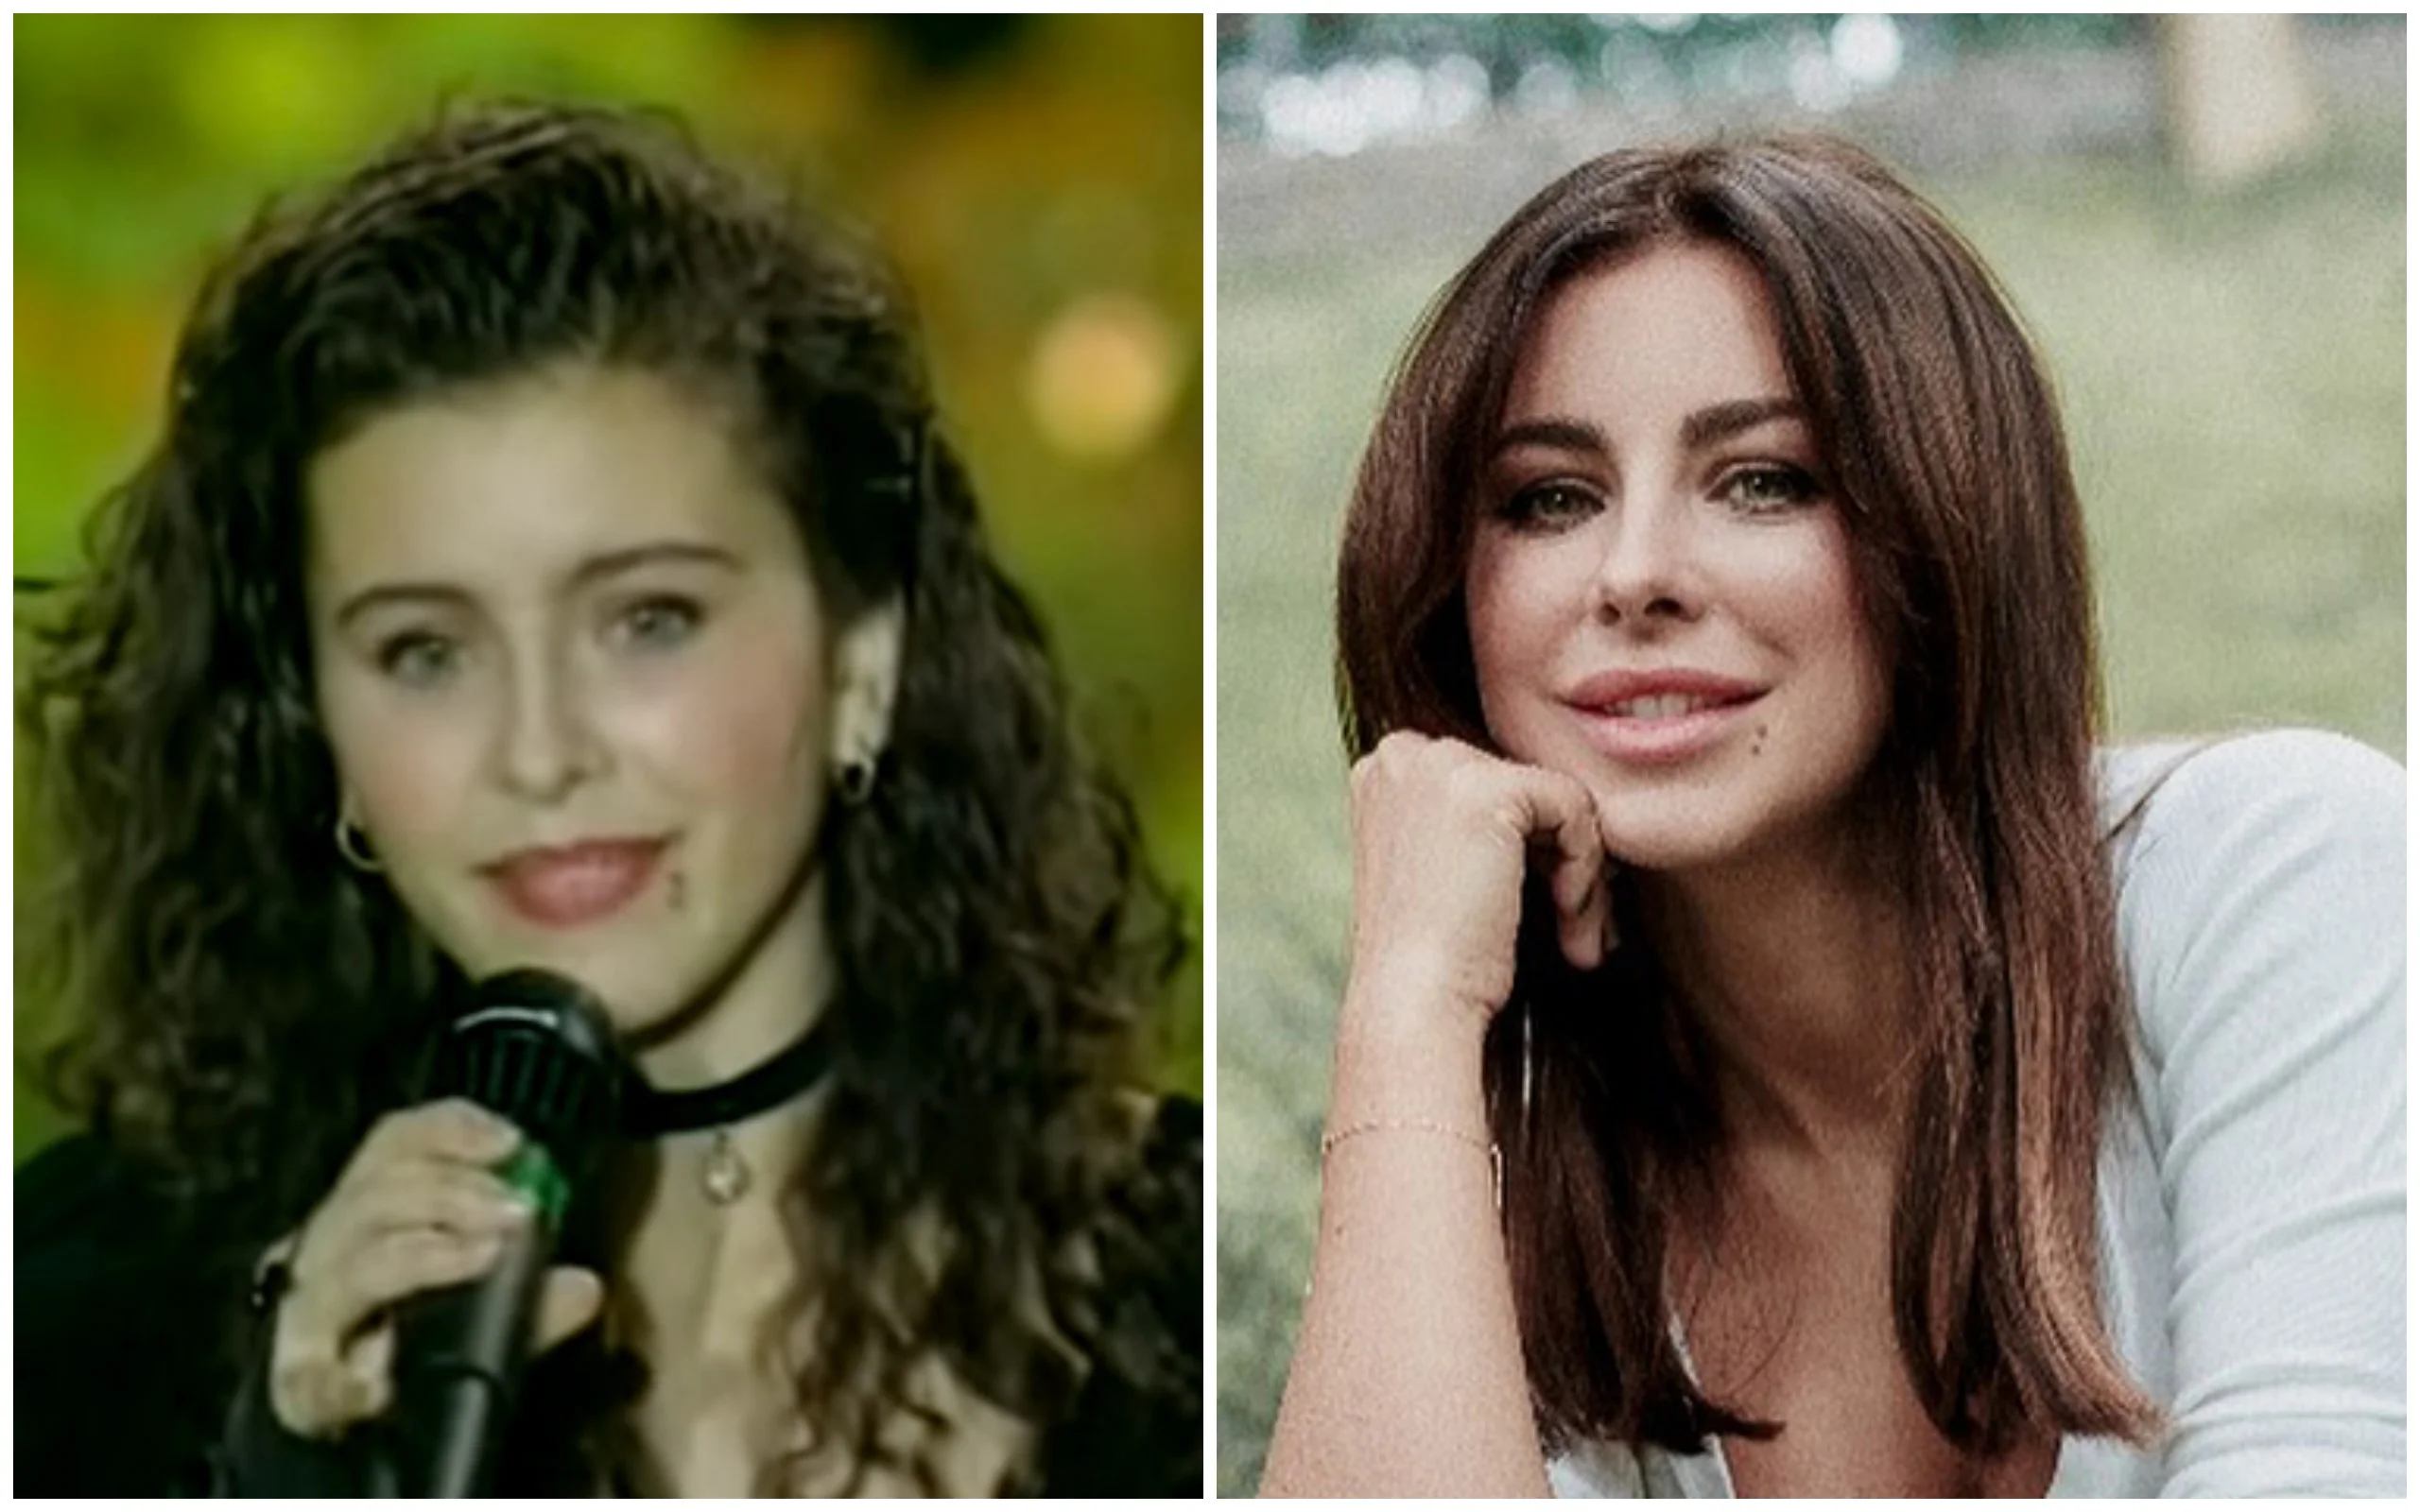 Тогда и сейчас: как с возрастом изменились украинские певцы 90-х - фото 394881